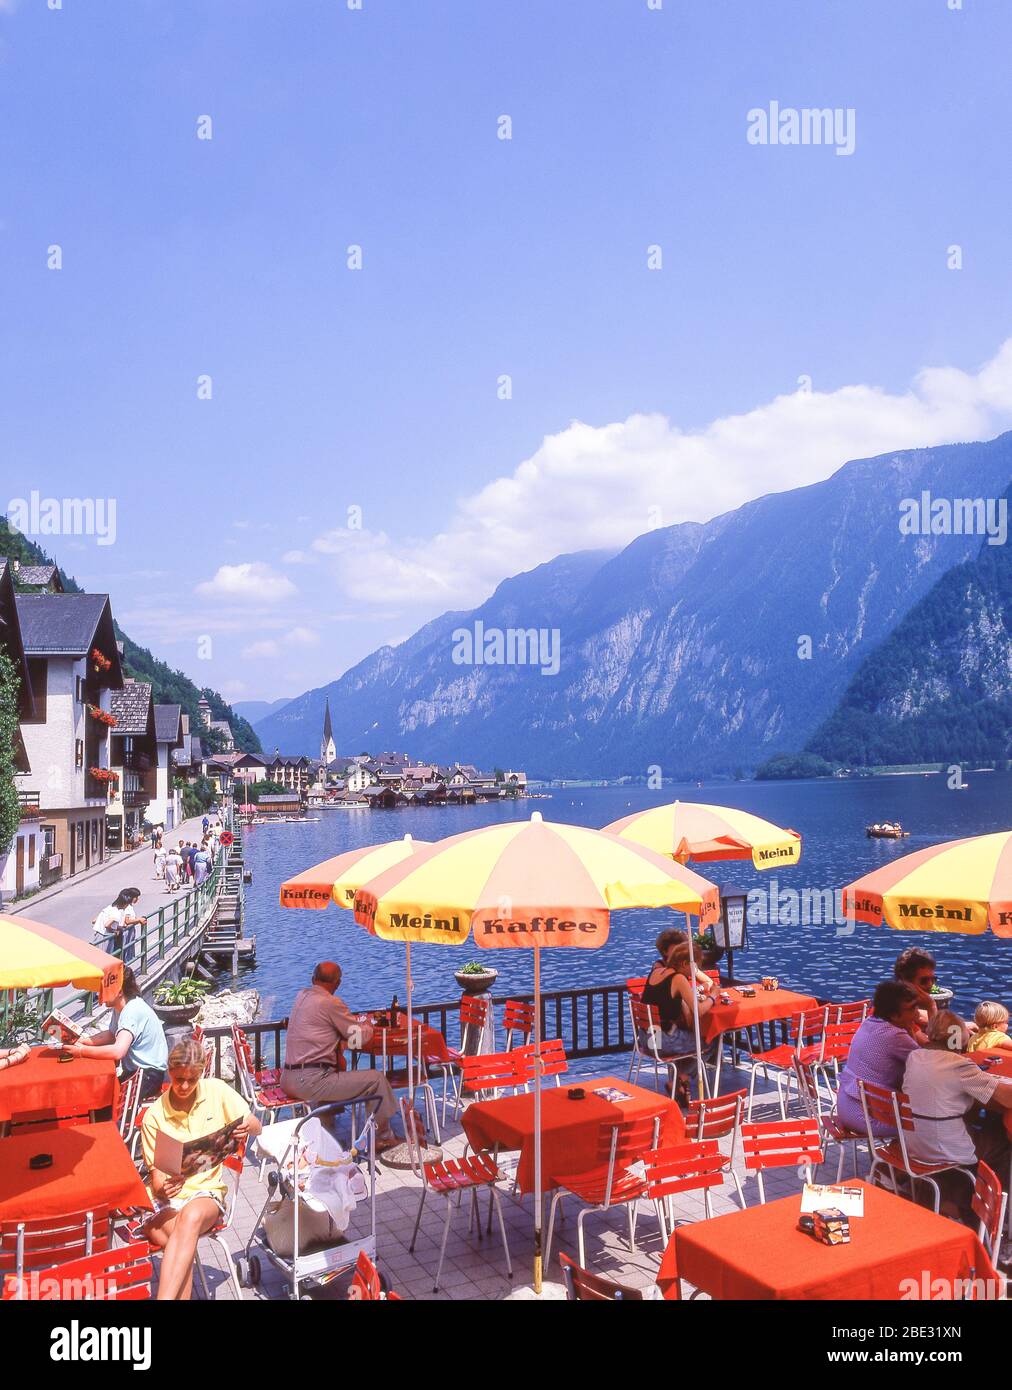 Lakeside restaurant, Hallstatt (Hoistod), Salzkammergut, Upper Austria, Republic of Austria Stock Photo